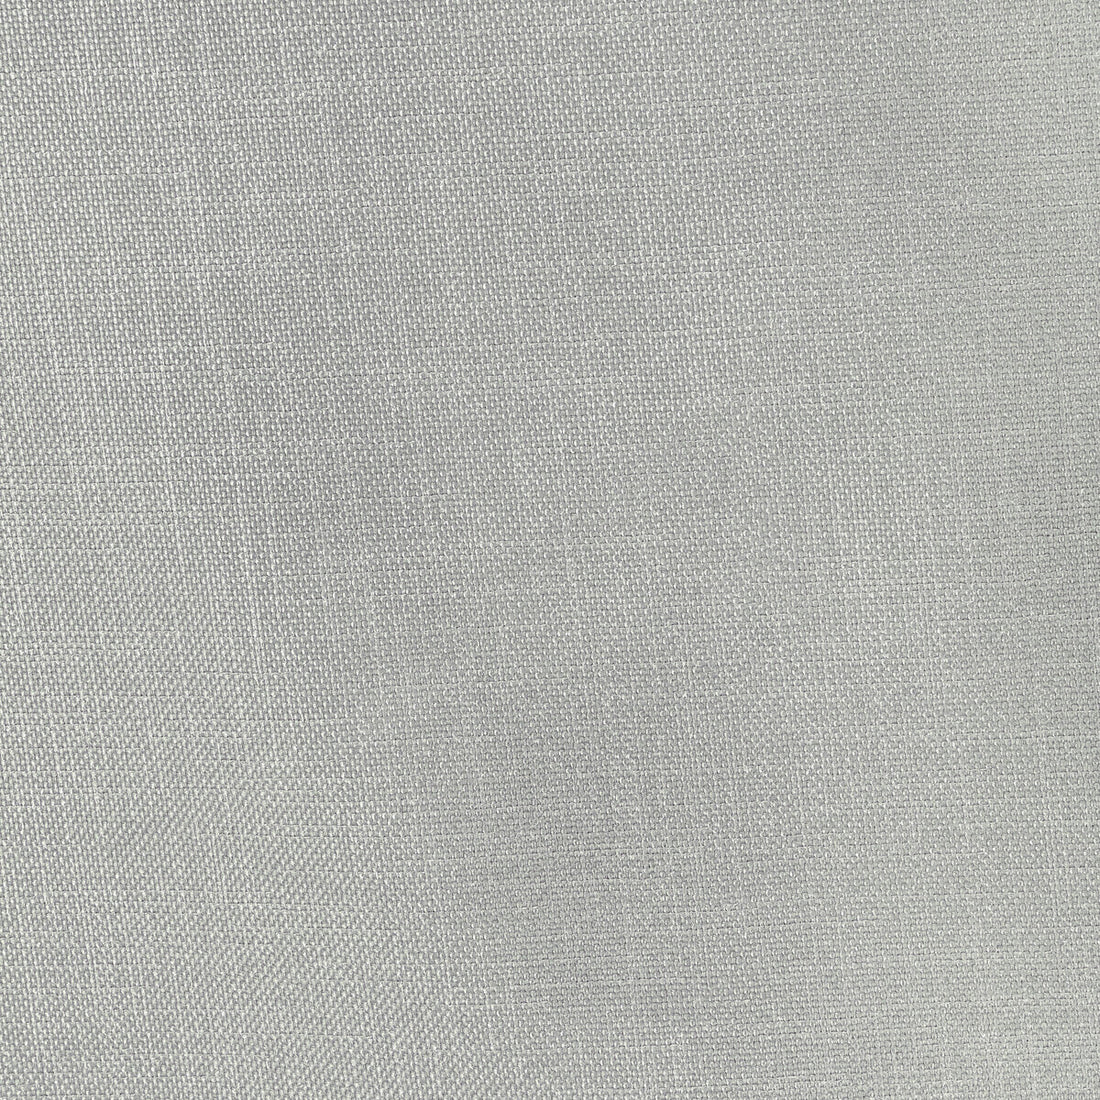 Kravet Basics fabric in 33120-11 color - pattern 33120.11.0 - by Kravet Basics